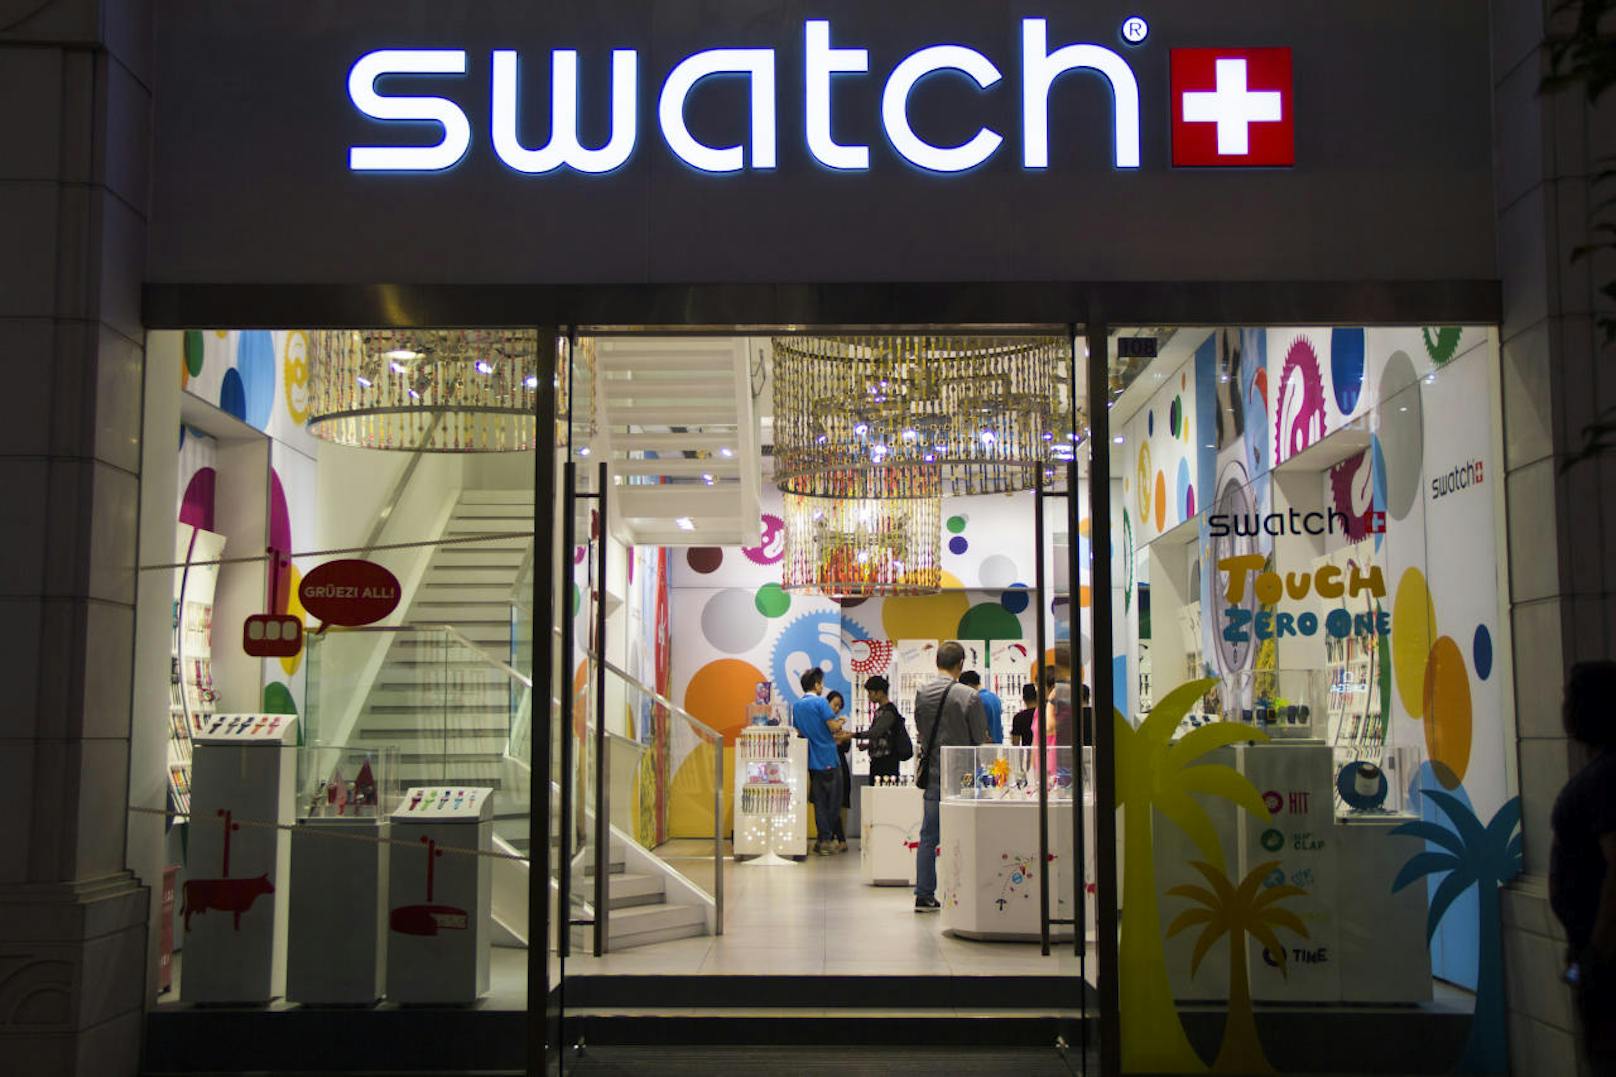 Zwei Weltunternehmen vor Gericht. Swatch klagt Samsung: und gewinnt!